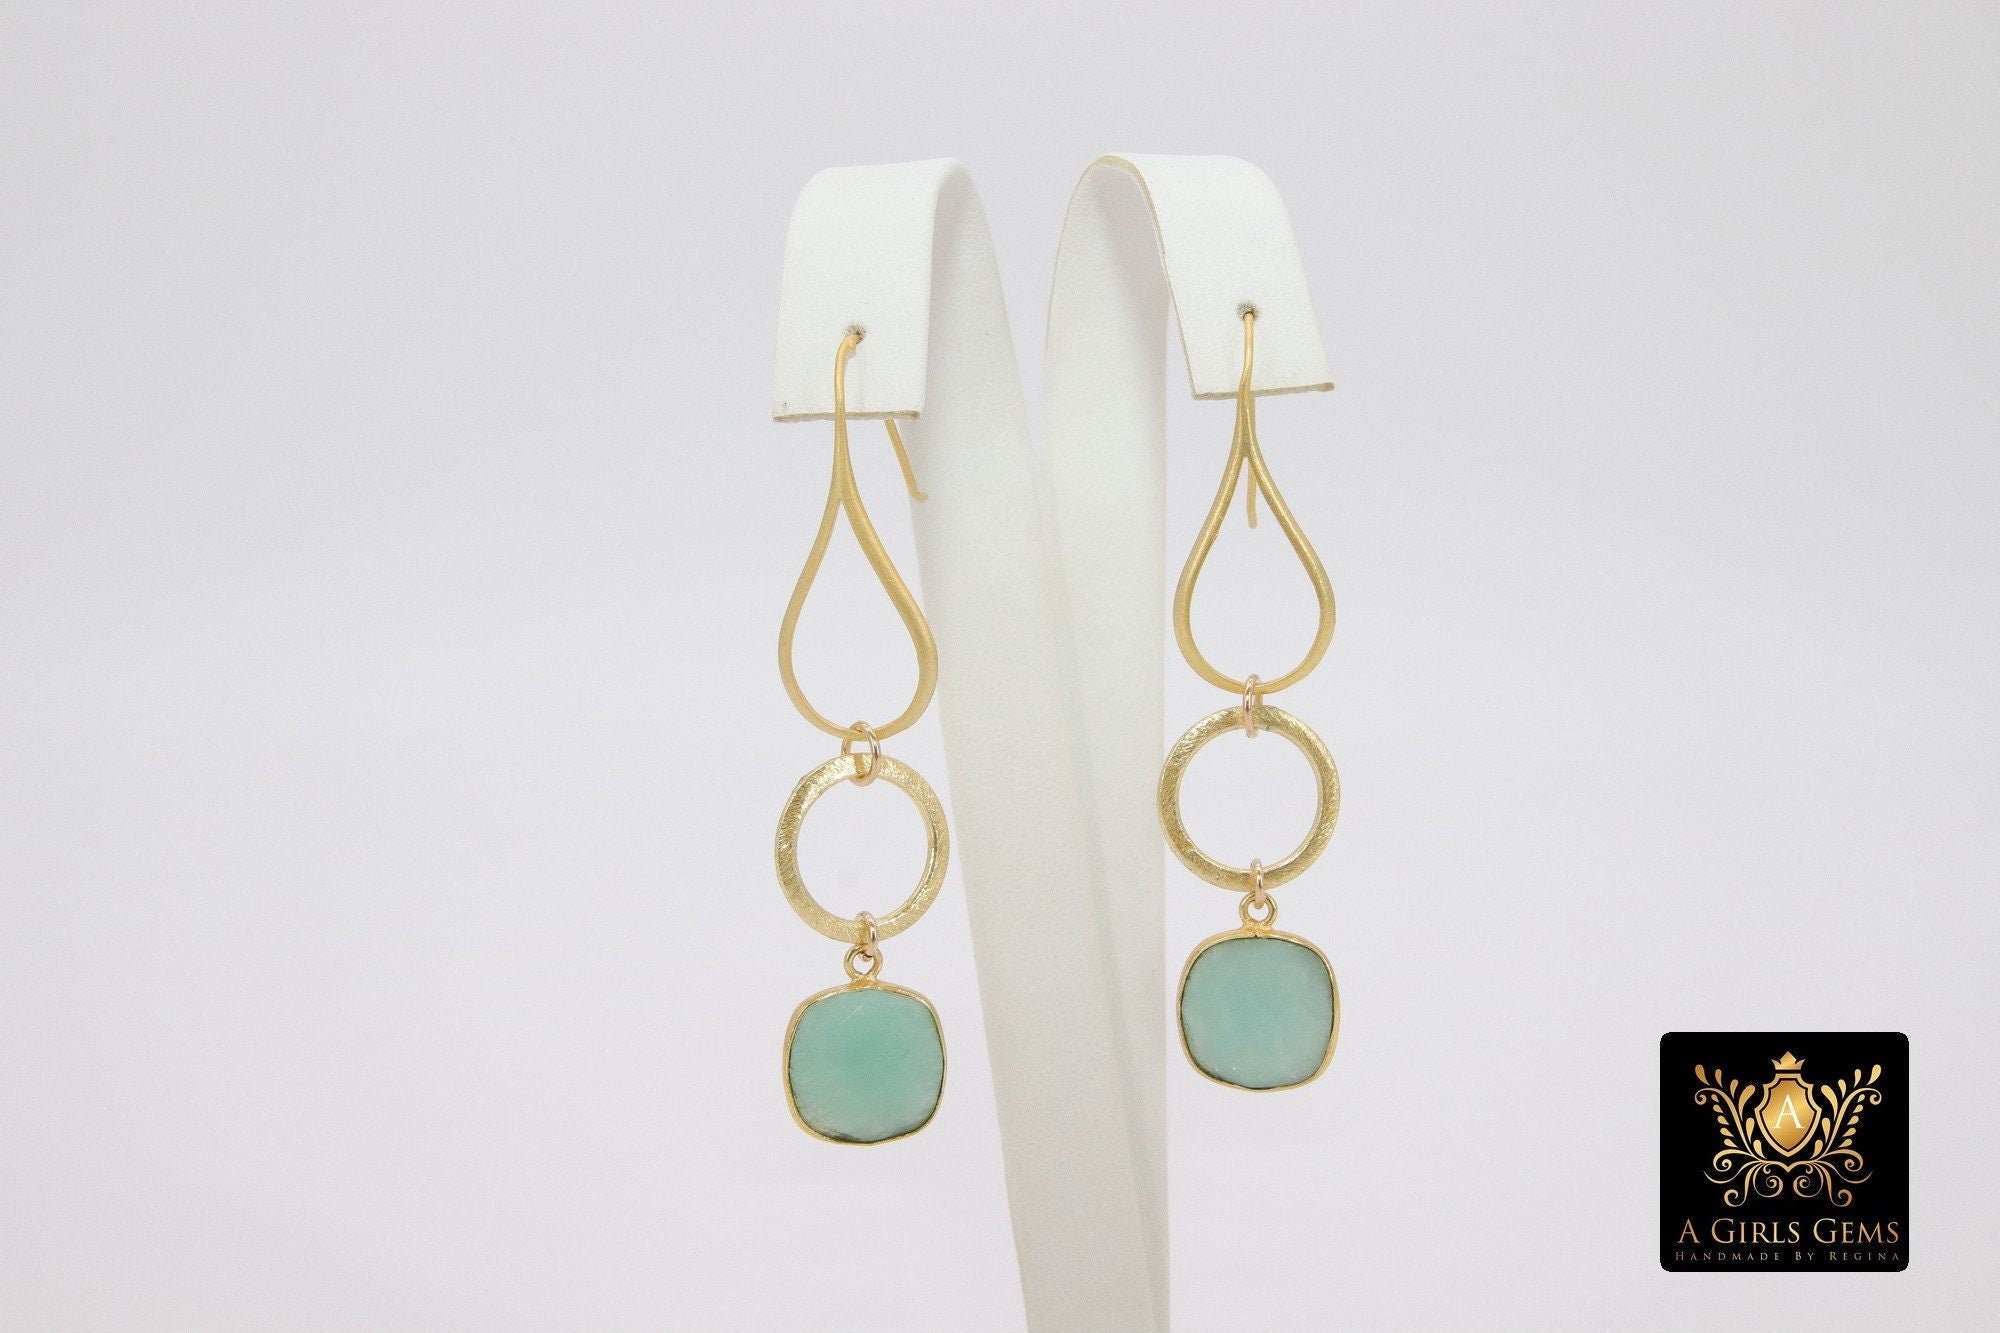 Blue Sapphire Earrings, Long Gemstone Earrings, Gold Dangle Ear Wire Hooks